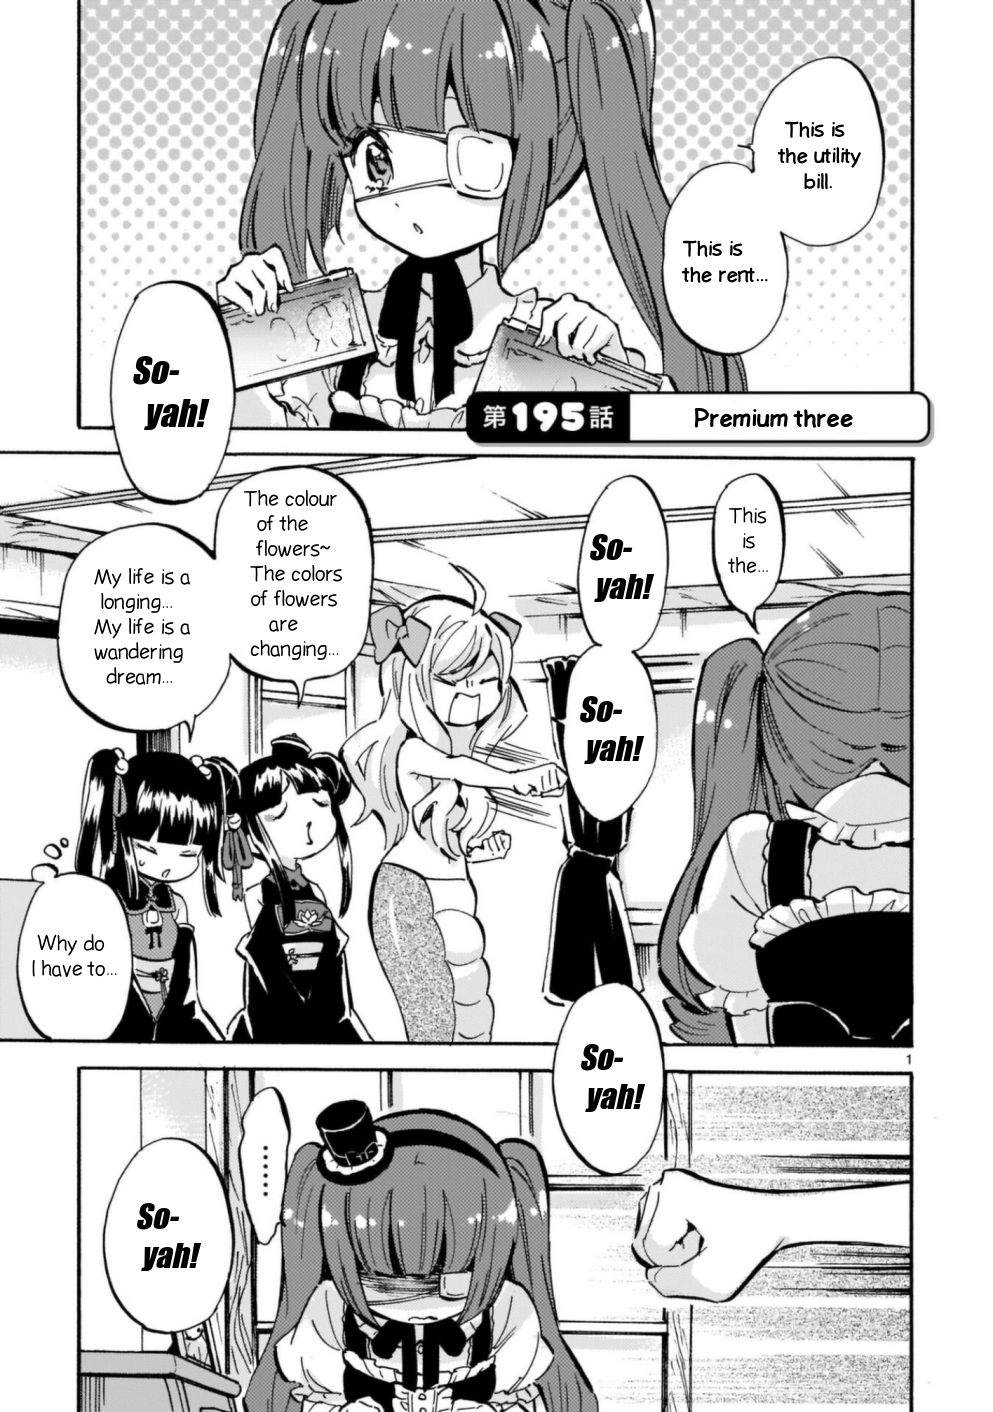 Jashin-chan Dropkick chapter 195 page 1